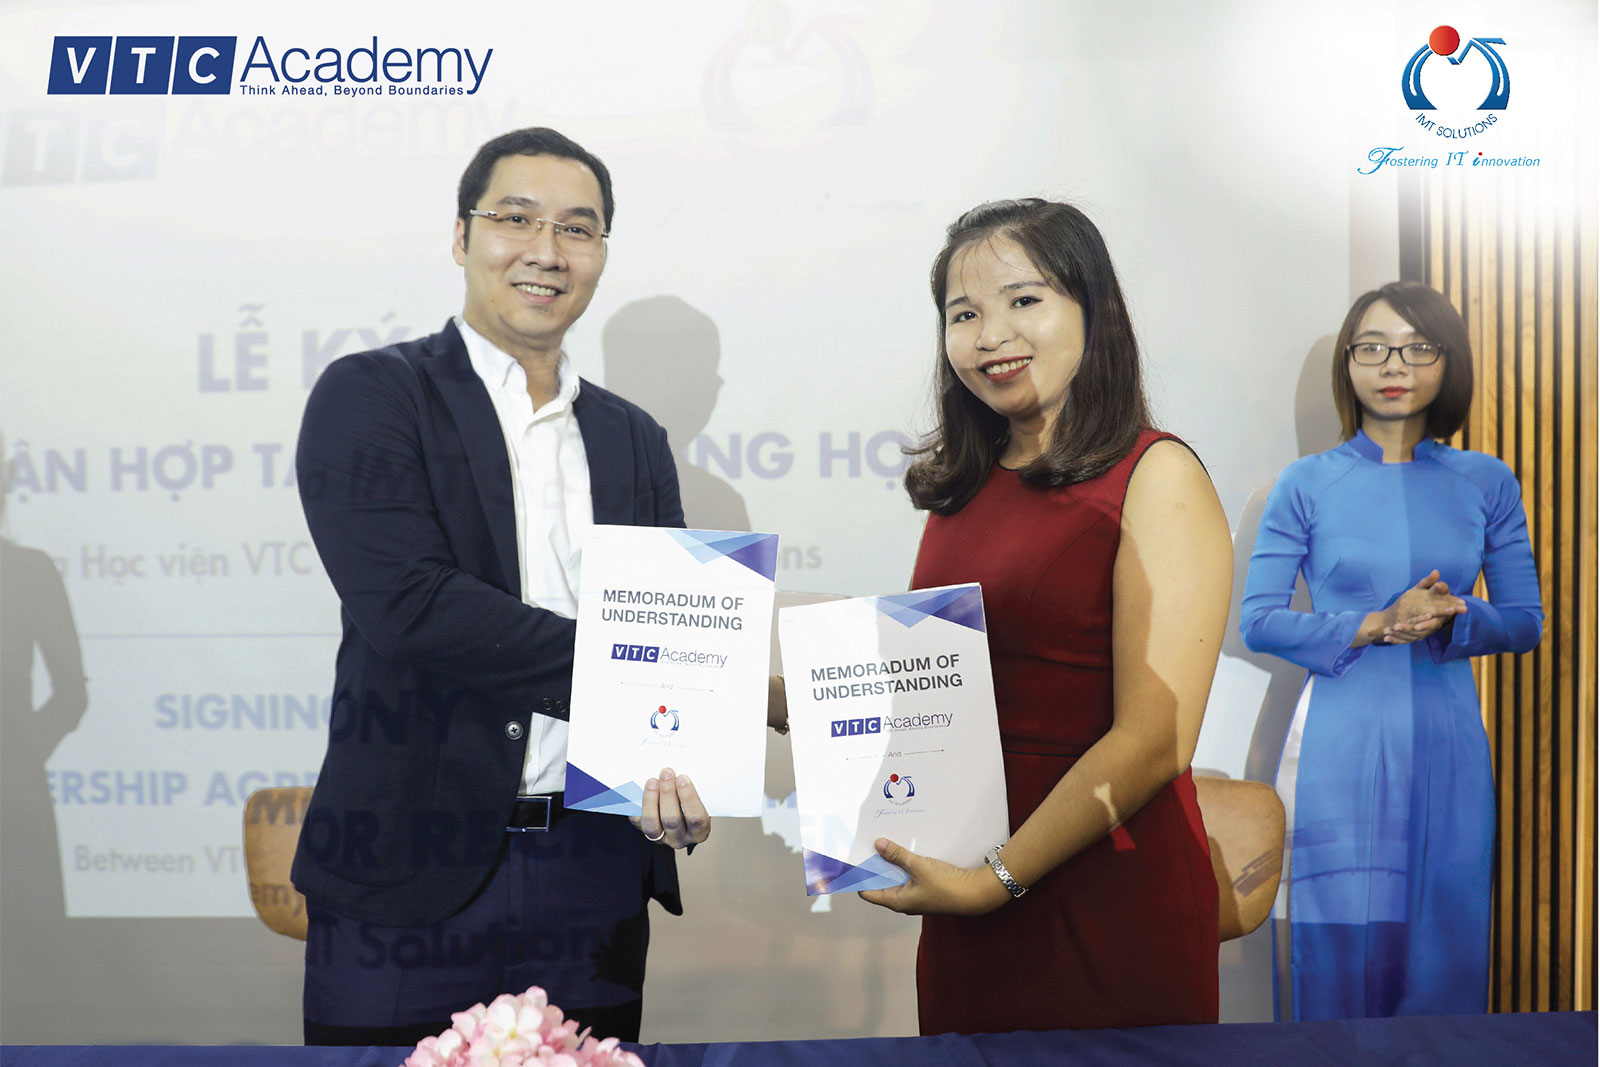 Review VTC Academy: Thêm 3 doanh nghiệp ký cam kết hỗ trợ tuyển dụng cùng VTC Academy